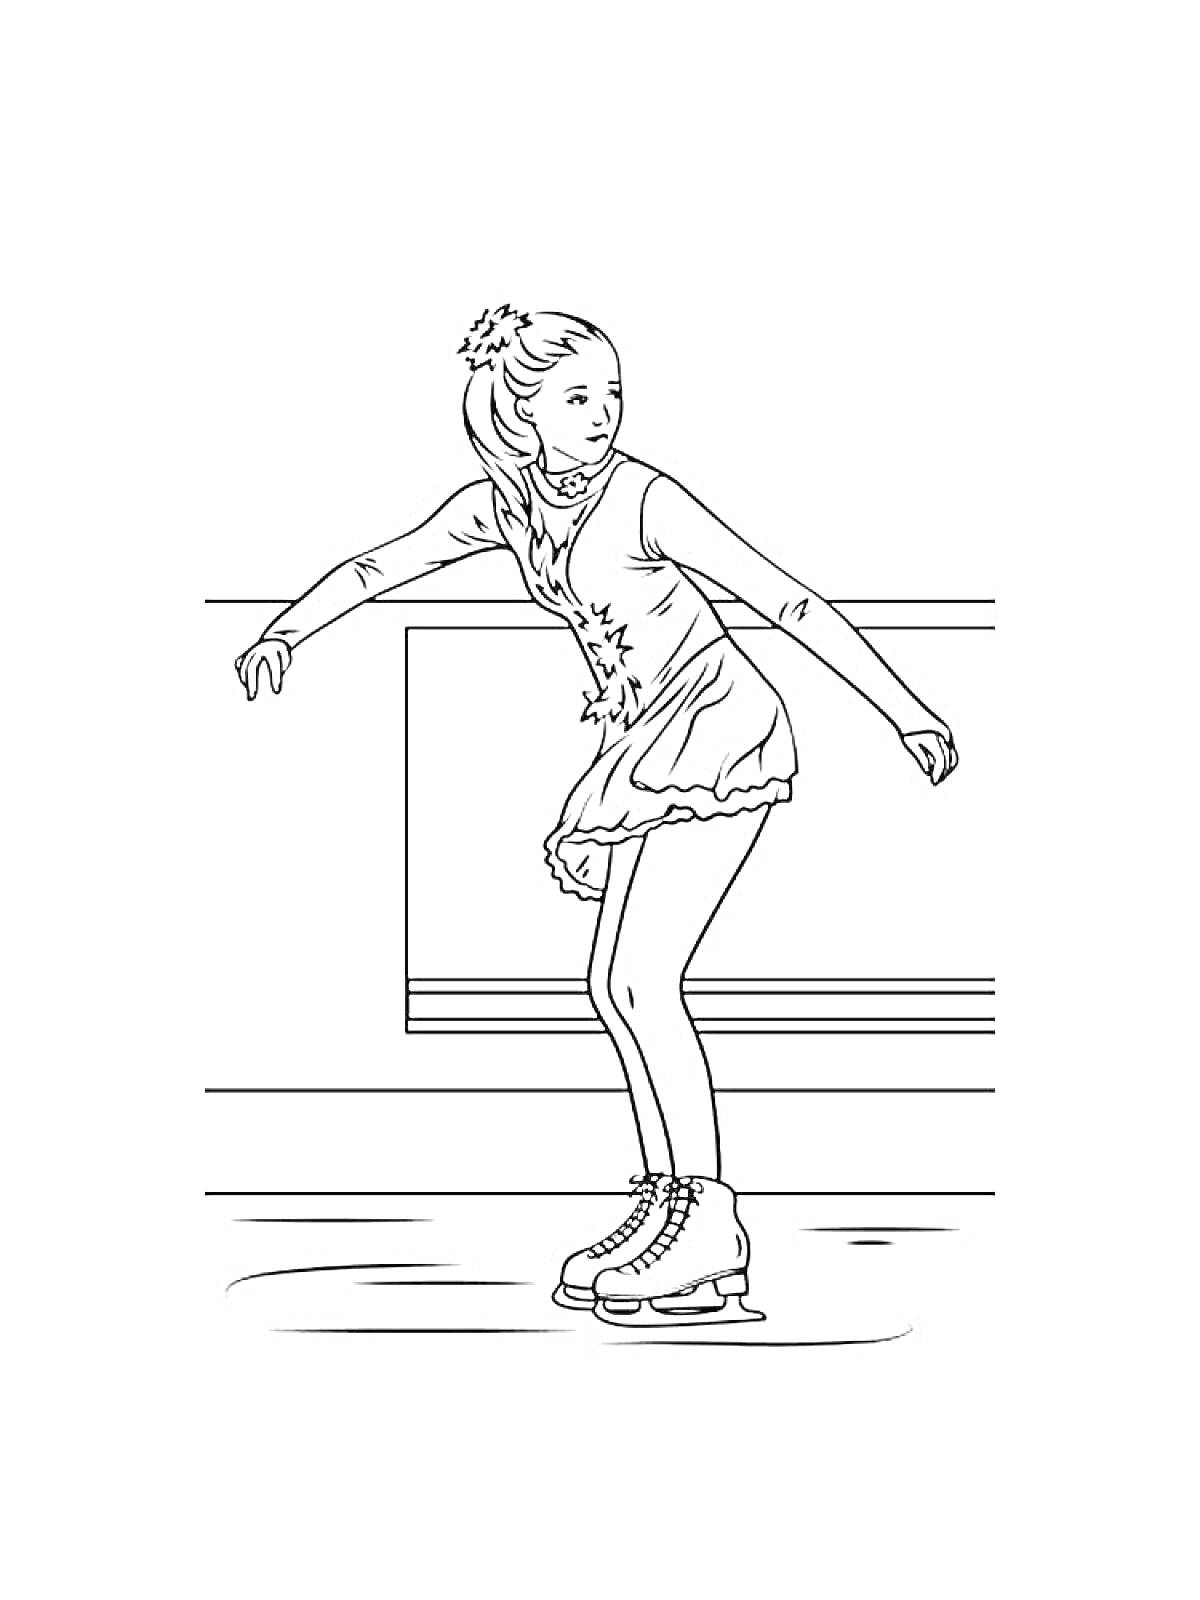 Раскраска Девочка-фигуристка в платье на льду возле бортика